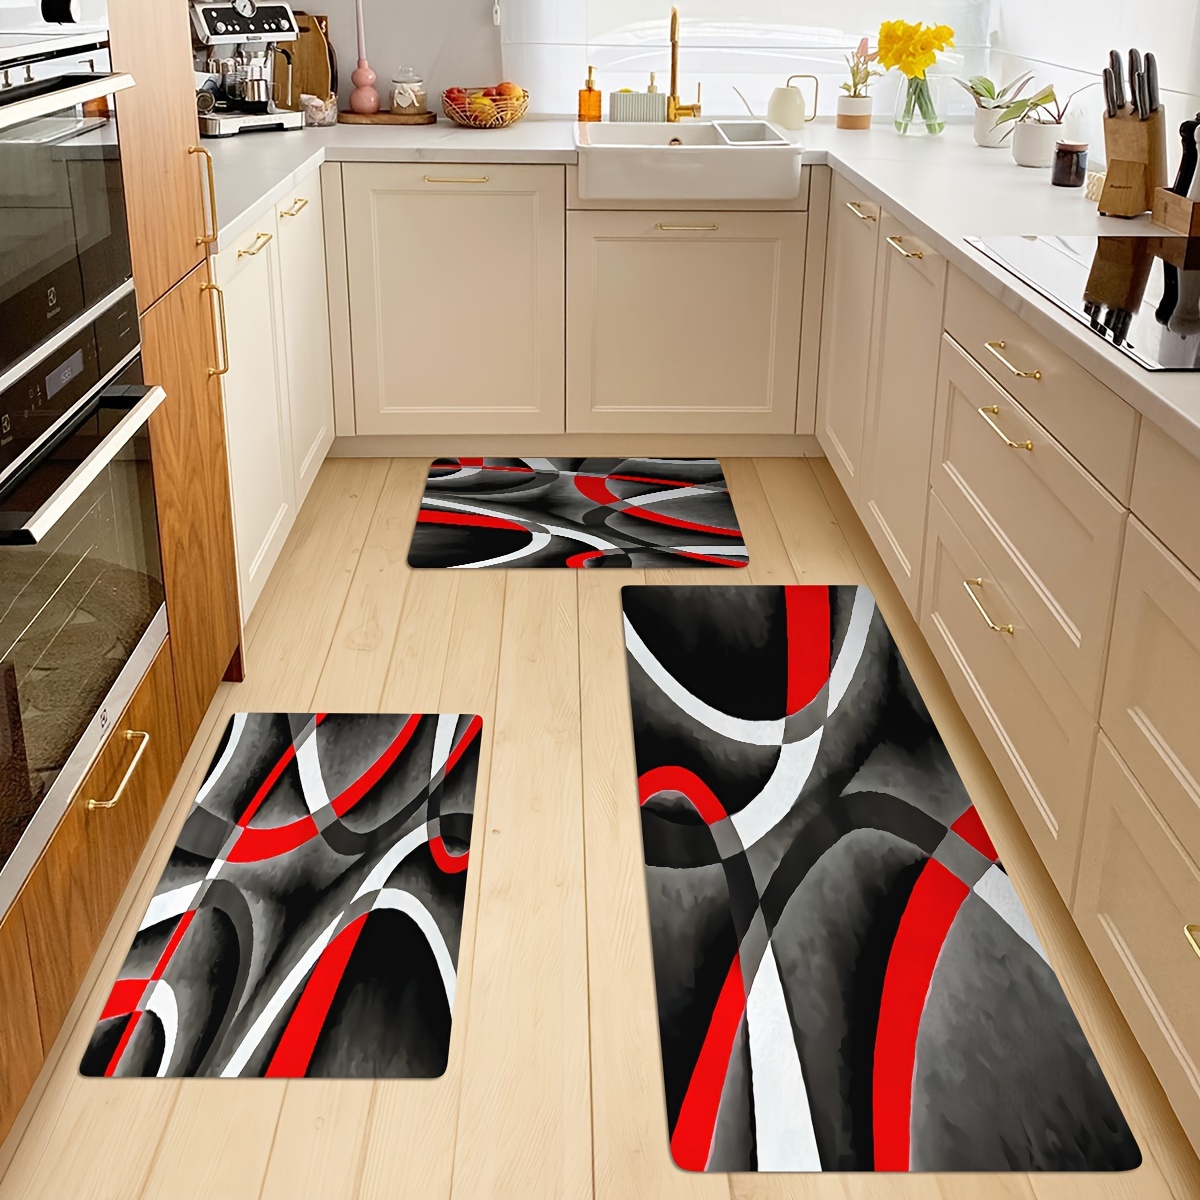 

1pc Crystal Velvet Kitchen Mat, Modern Multi-colored Irregular Print Rug, Non-slip Polyester Floor Mat, For Doorway Laundry Room Dining Table, Room Decor